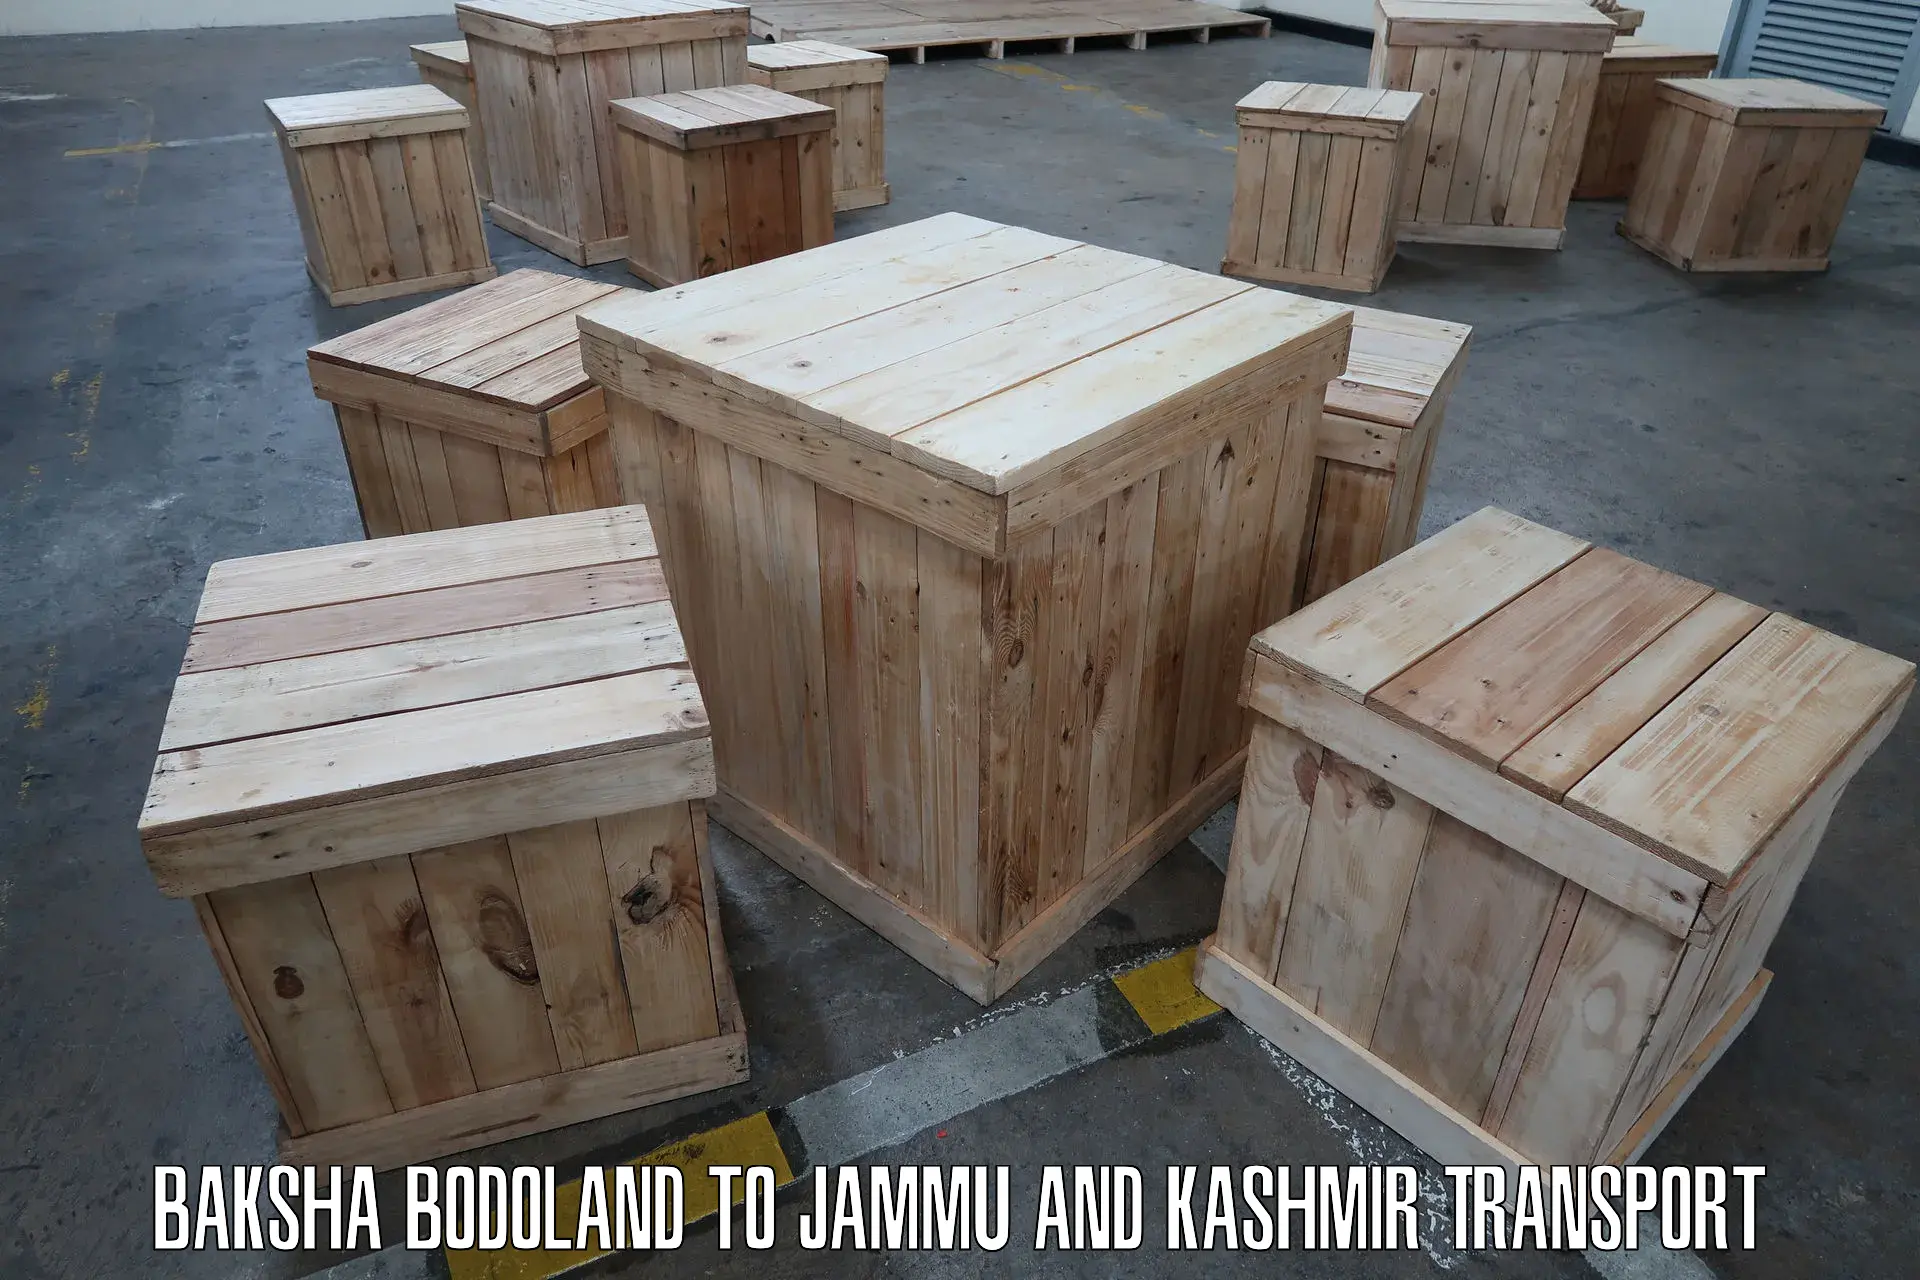 Land transport services Baksha Bodoland to Jammu and Kashmir